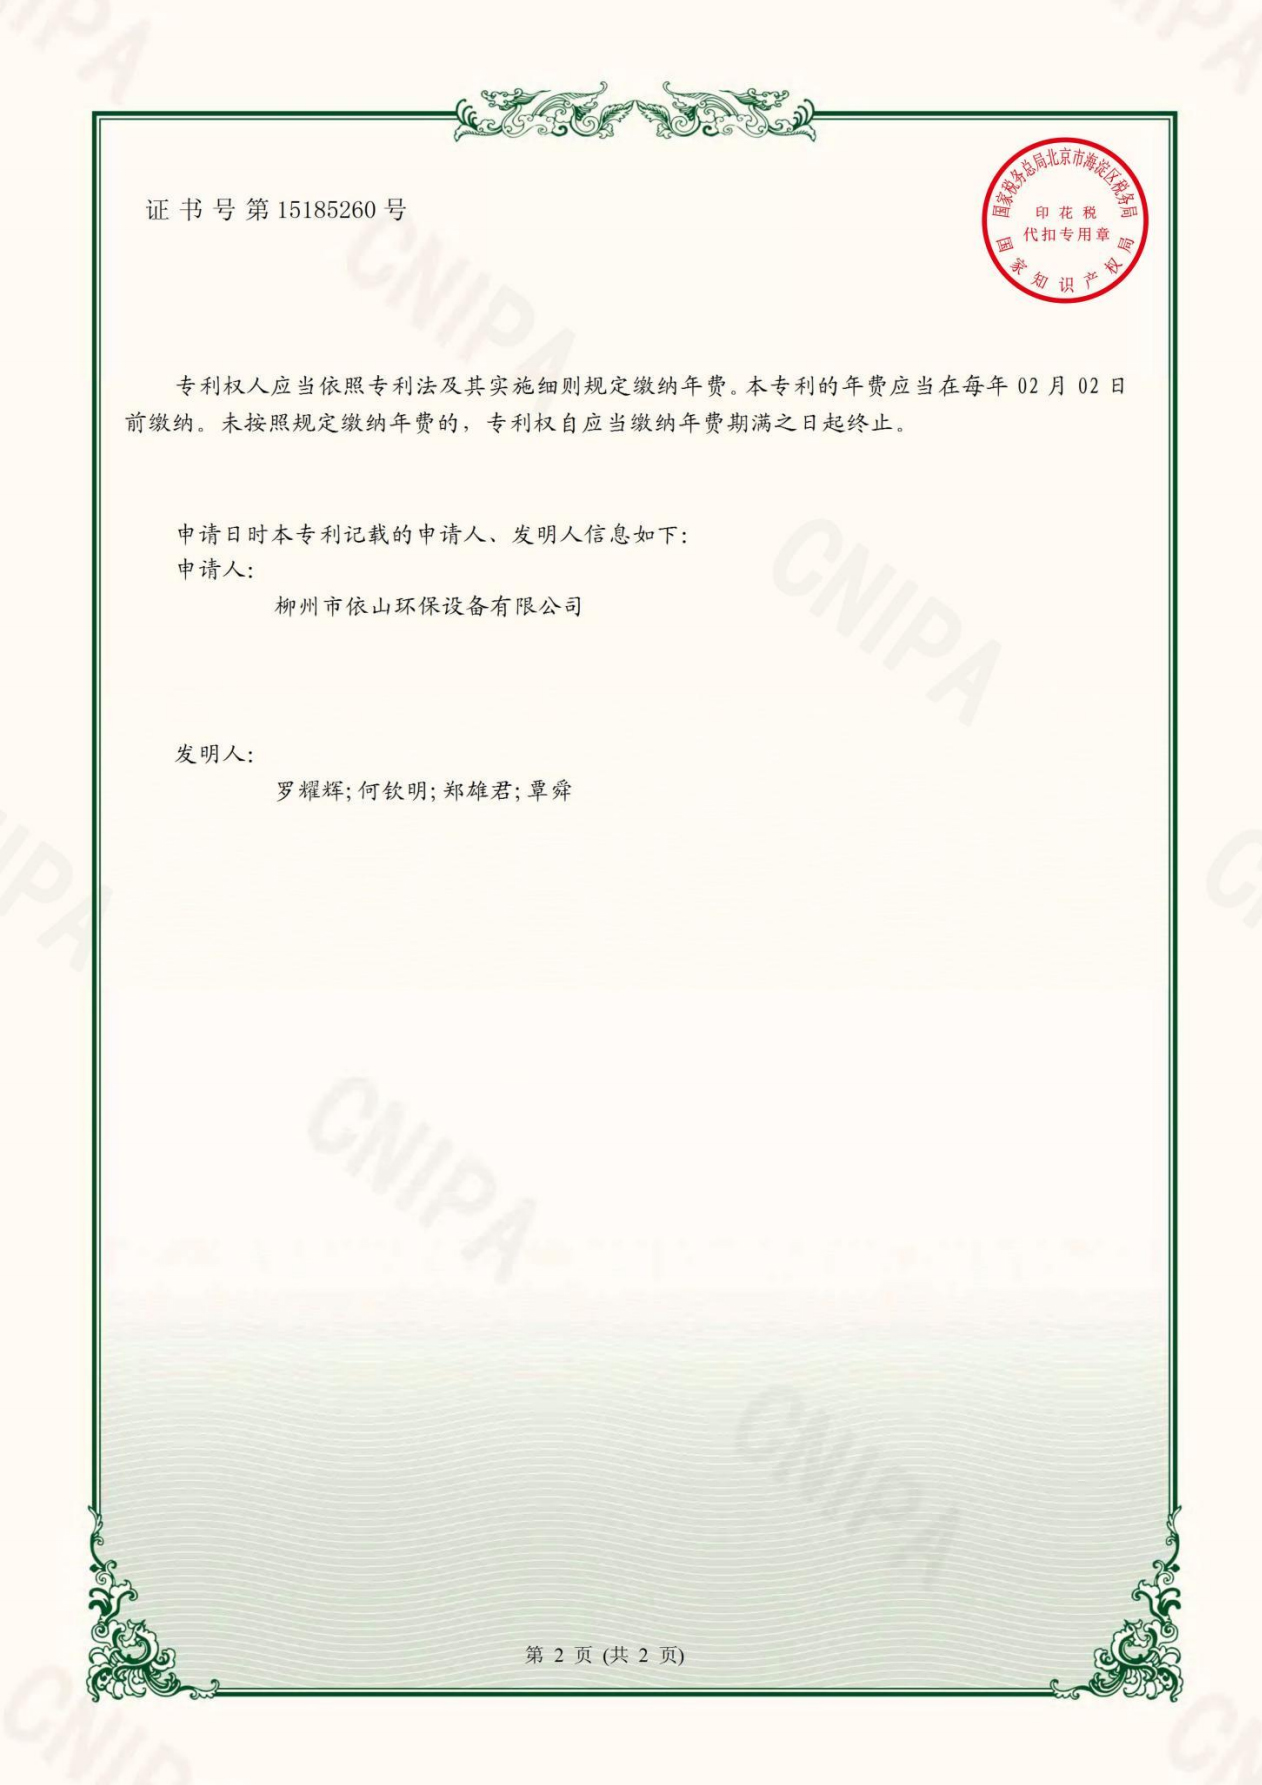 柳州市依山环保设备有限公司资质文件_17.jpg